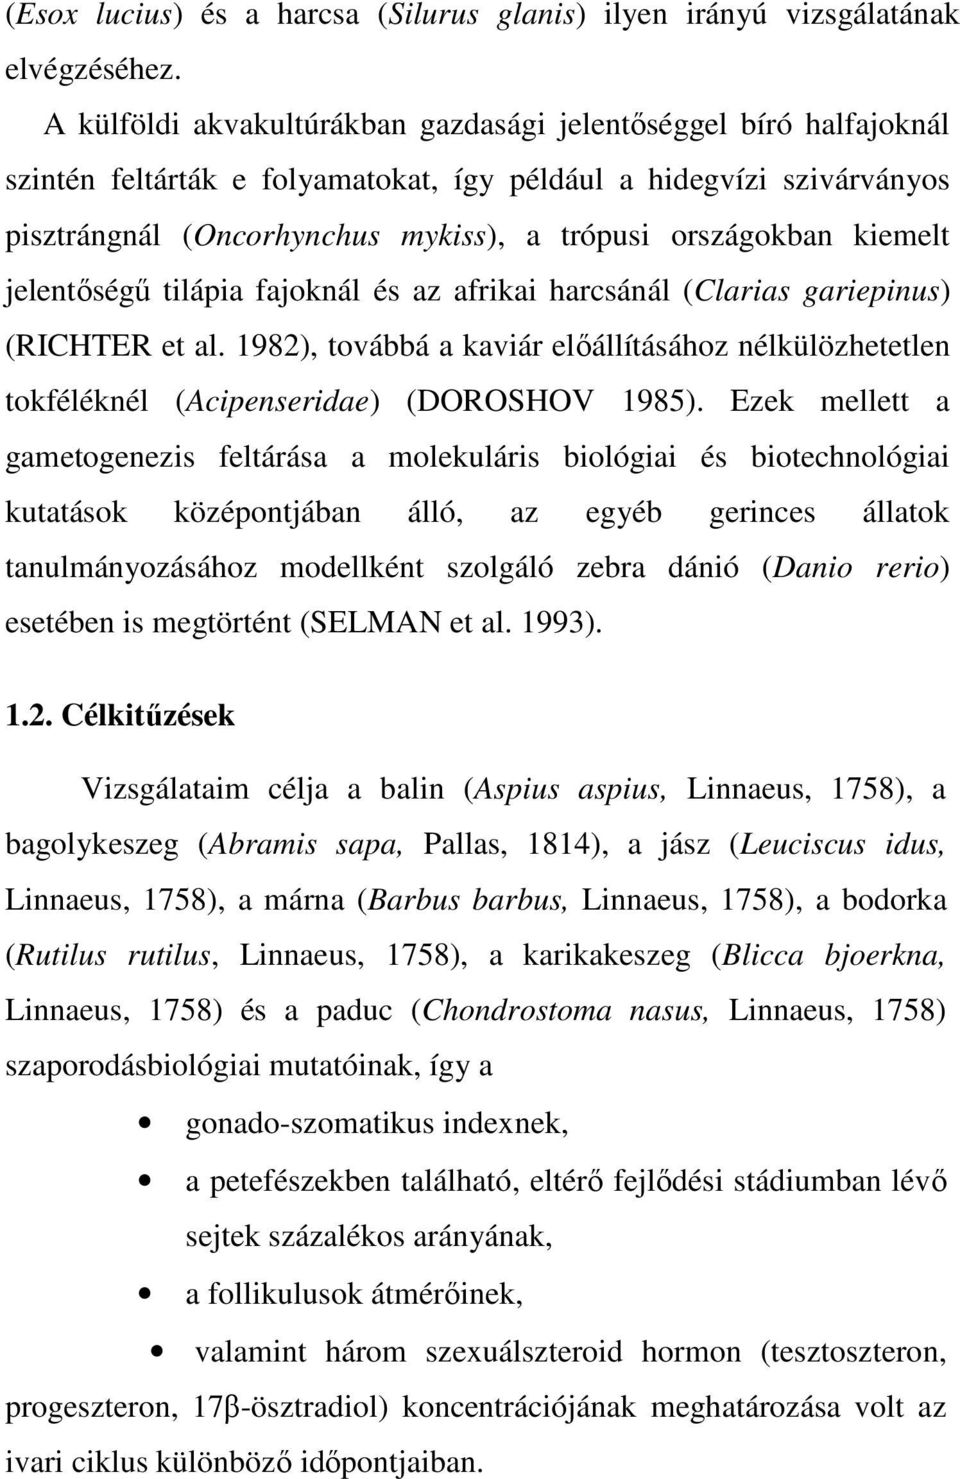 kiemelt jelentıségő tilápia fajoknál és az afrikai harcsánál (Clarias gariepinus) (RICHTER et al. 1982), továbbá a kaviár elıállításához nélkülözhetetlen tokféléknél (Acipenseridae) (DOROSHOV 1985).